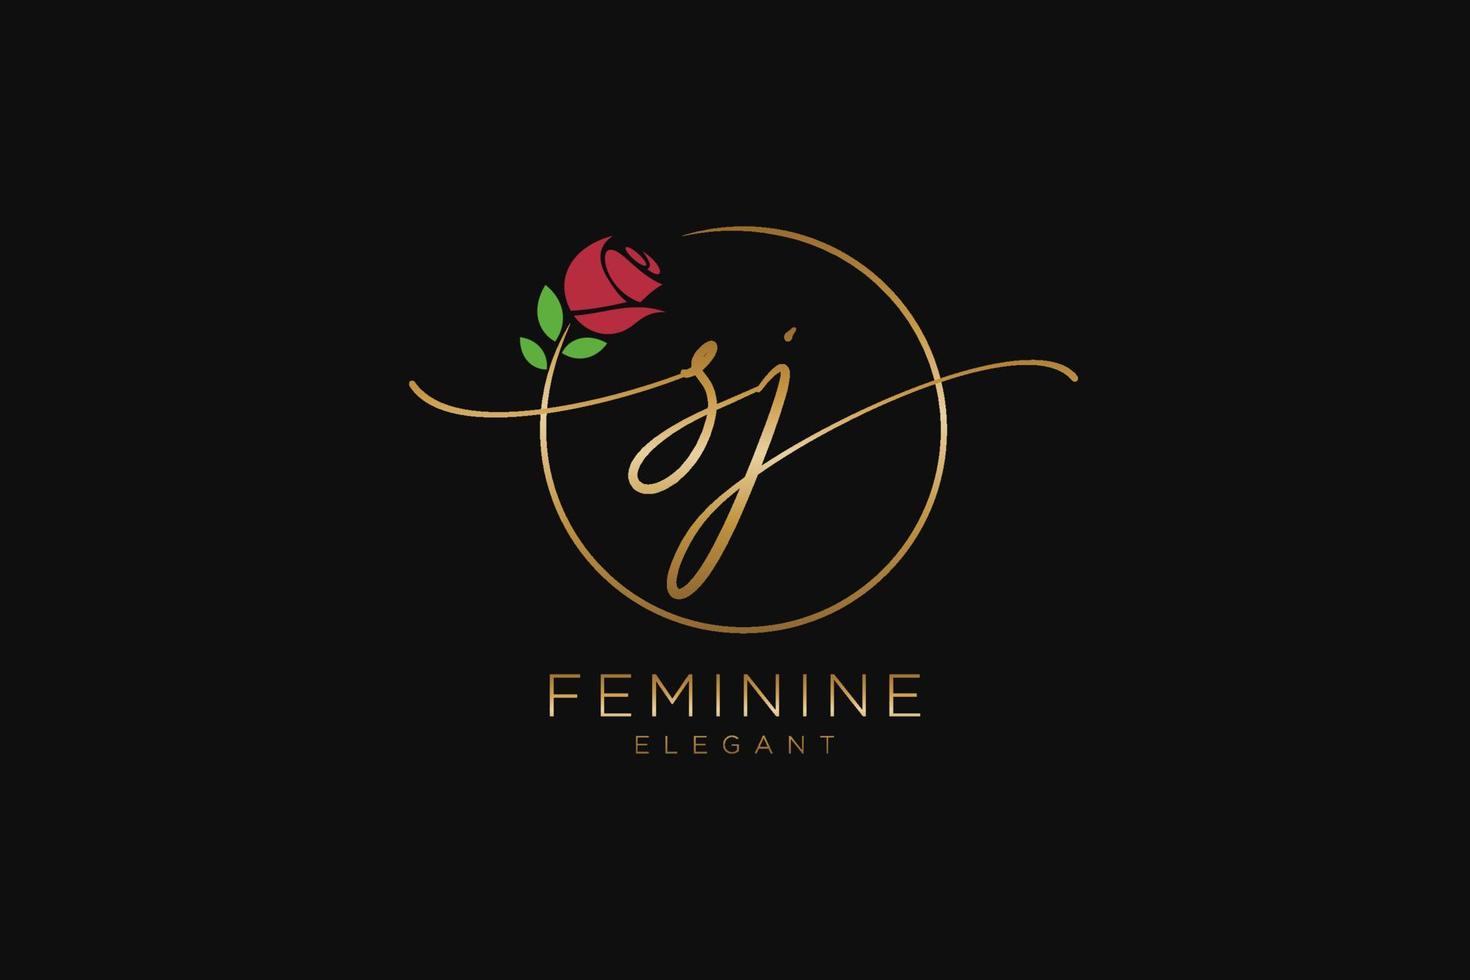 monogramme de beauté du logo féminin sj initial et création de logo élégante, logo manuscrit de la signature initiale, mariage, mode, floral et botanique avec modèle créatif. vecteur